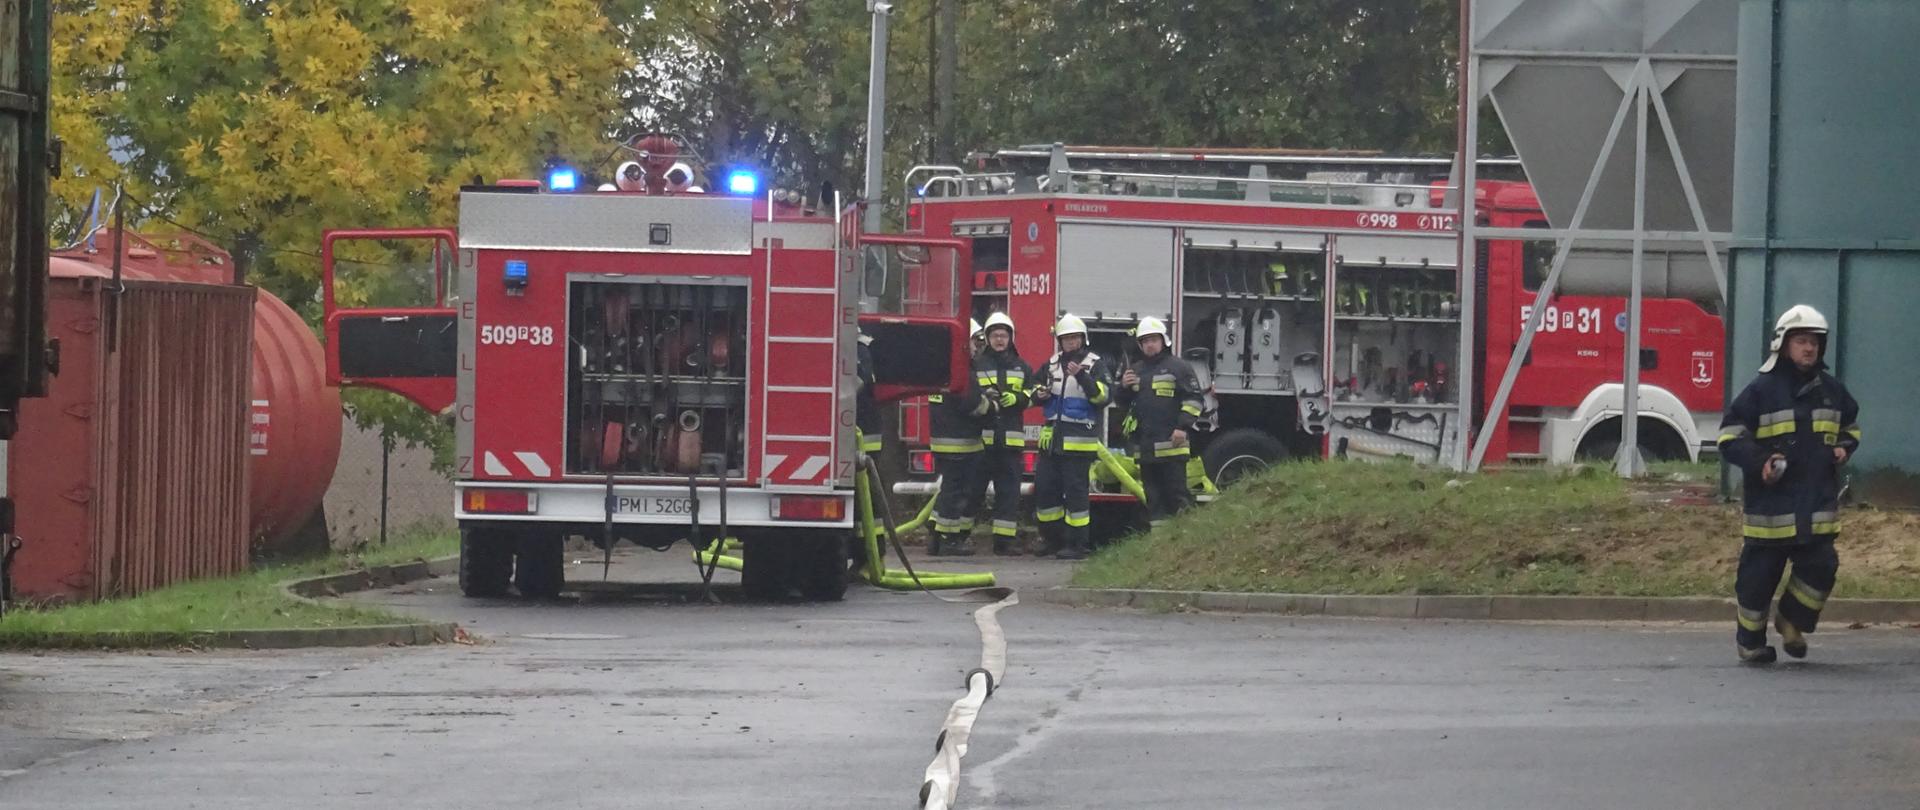 Zdjęcie przedstawia wozy pożarnicze wraz ze strażakami.